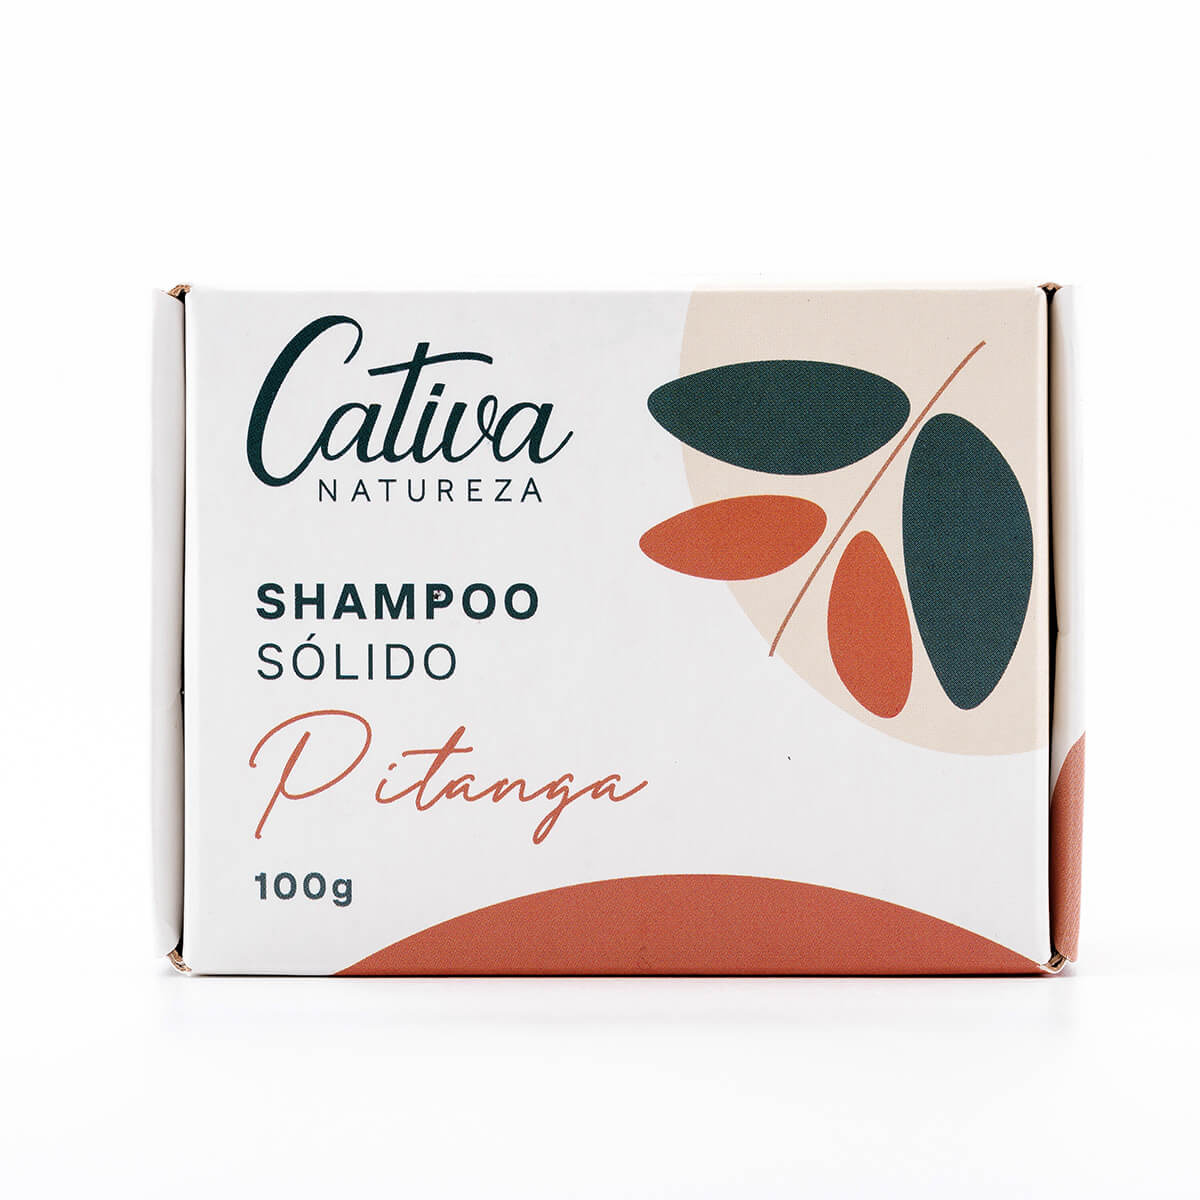 Shampoo Solido de Pitanga - Cativa - Frasco com 100g - Mundo dos Óleos